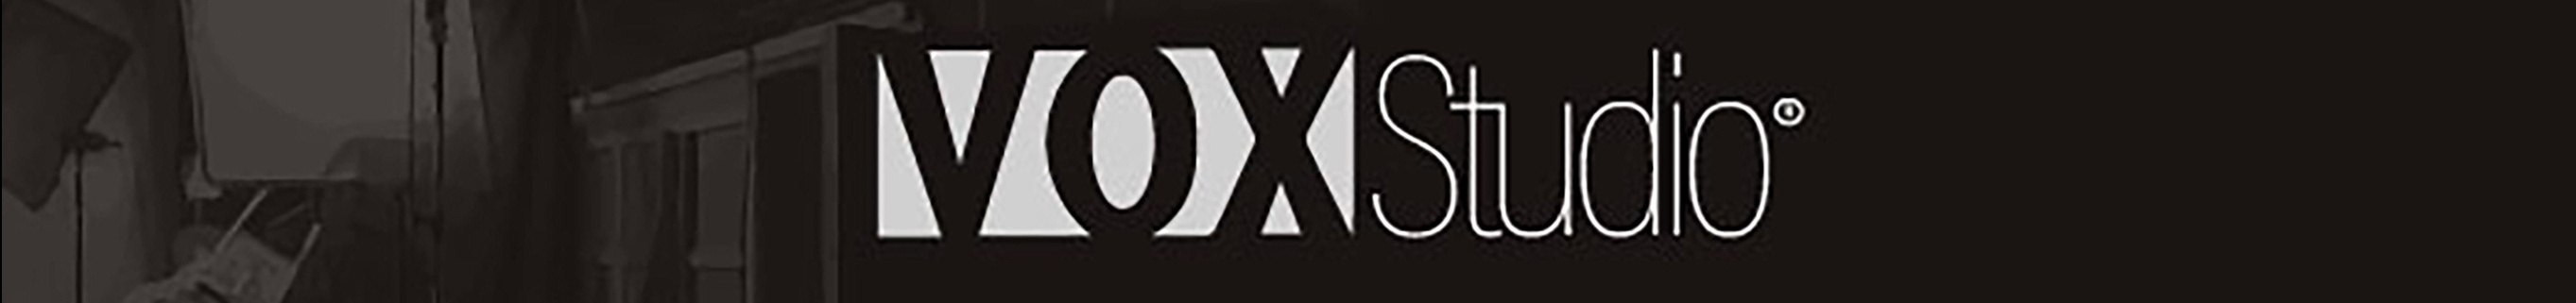 VOX STUDIO's profile banner